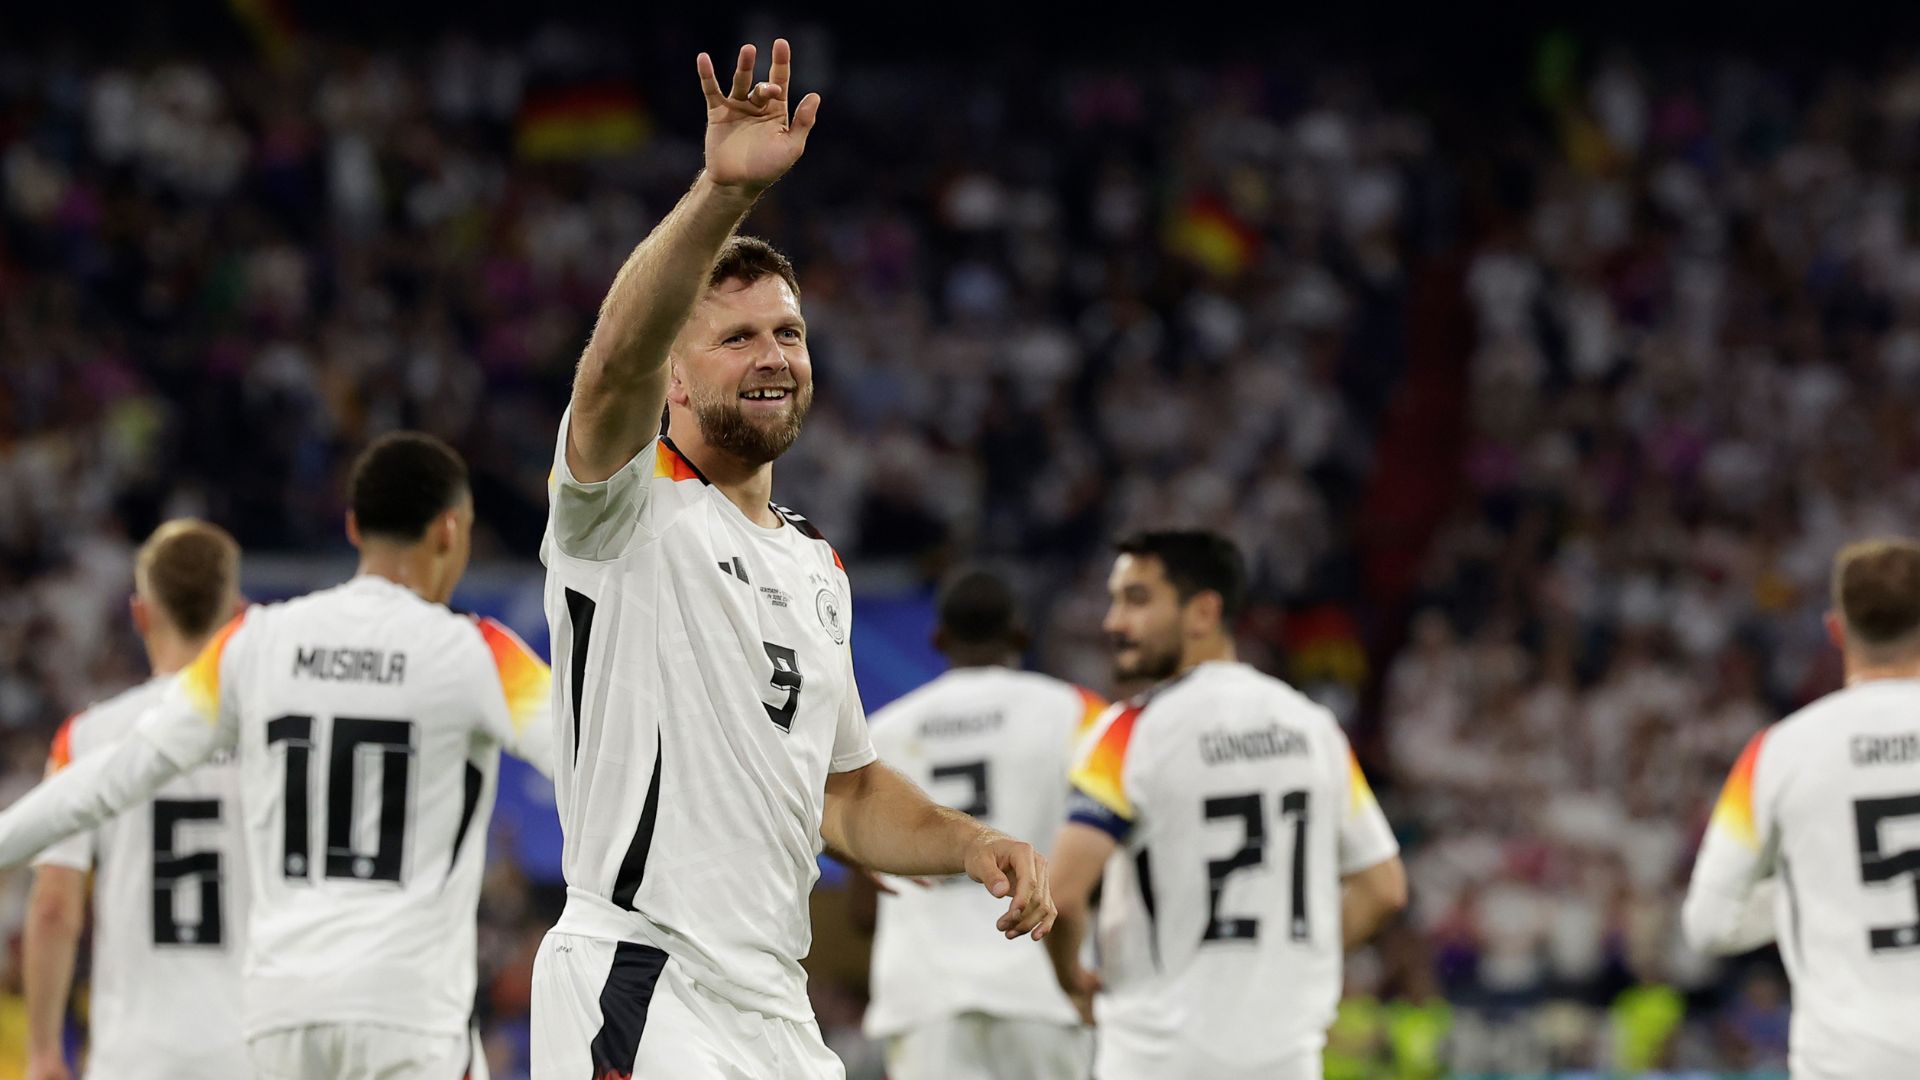 Fullkrug comemorando o quarto gol da Alemanha (Crédito: Getty Images)